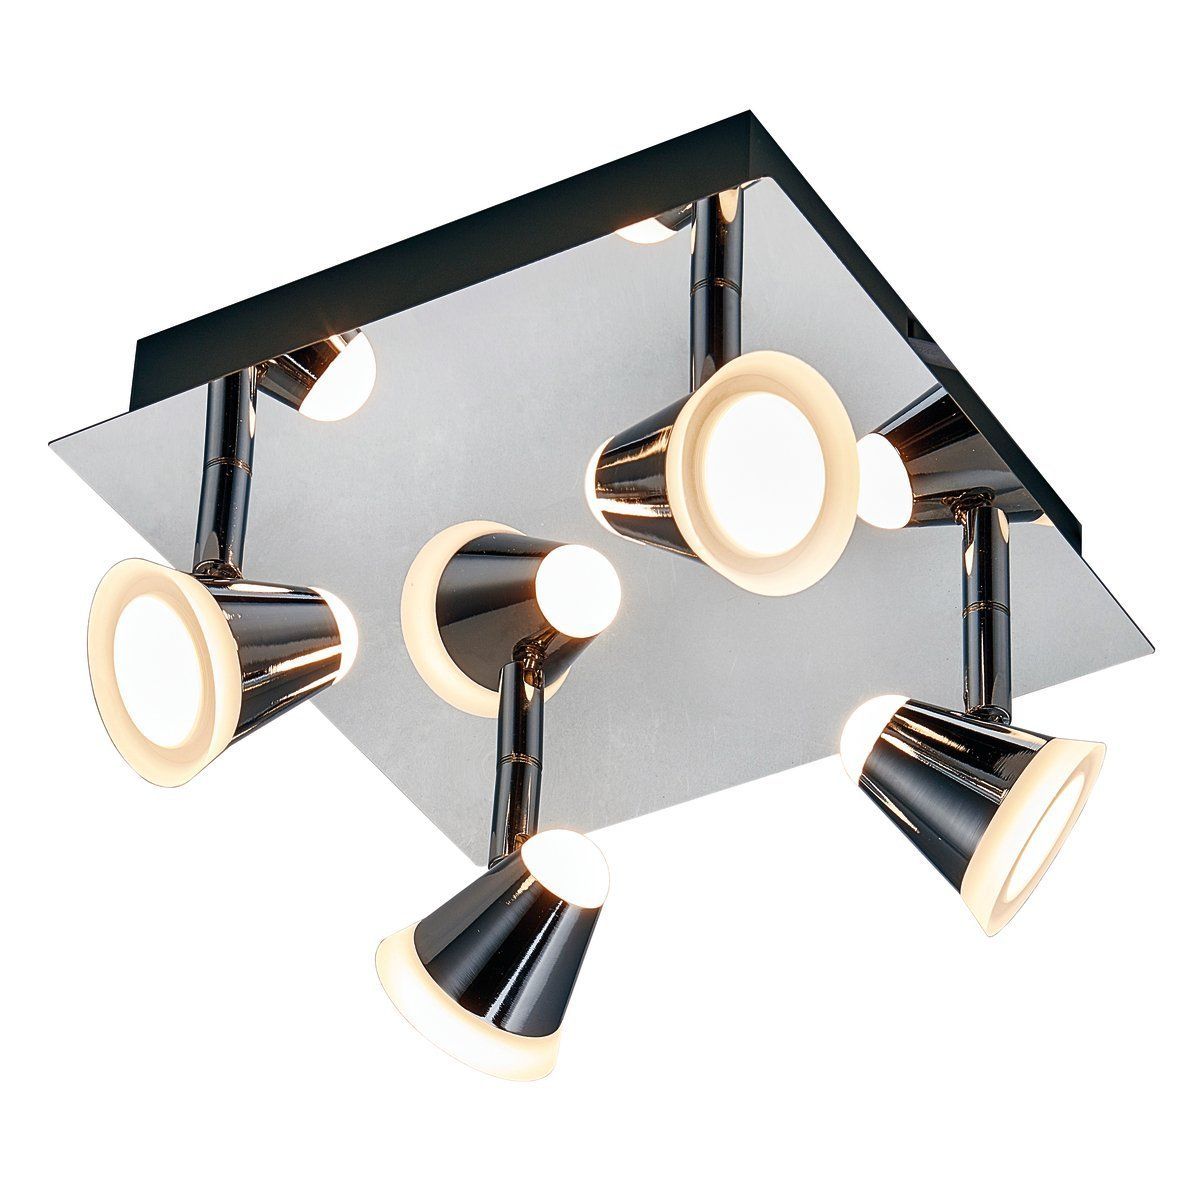 Plafonnier 4 spots LED orientables NINO argenté en métal